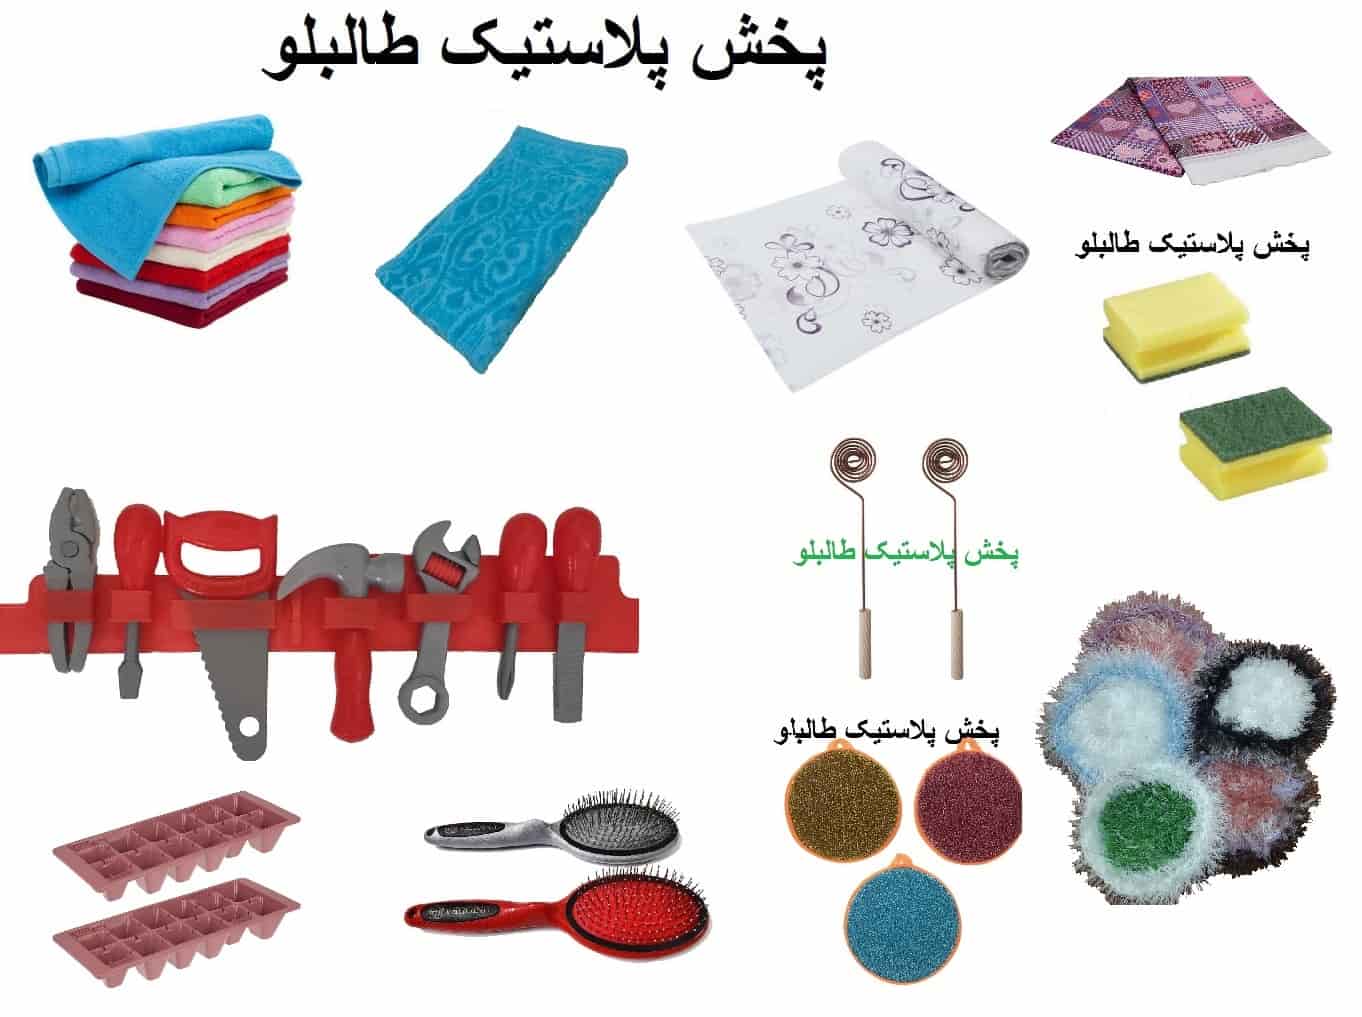 پخش خرده ریز ایرانی حراجی فروش عمده اجناس پرفروش خرازی و اسباب بازی